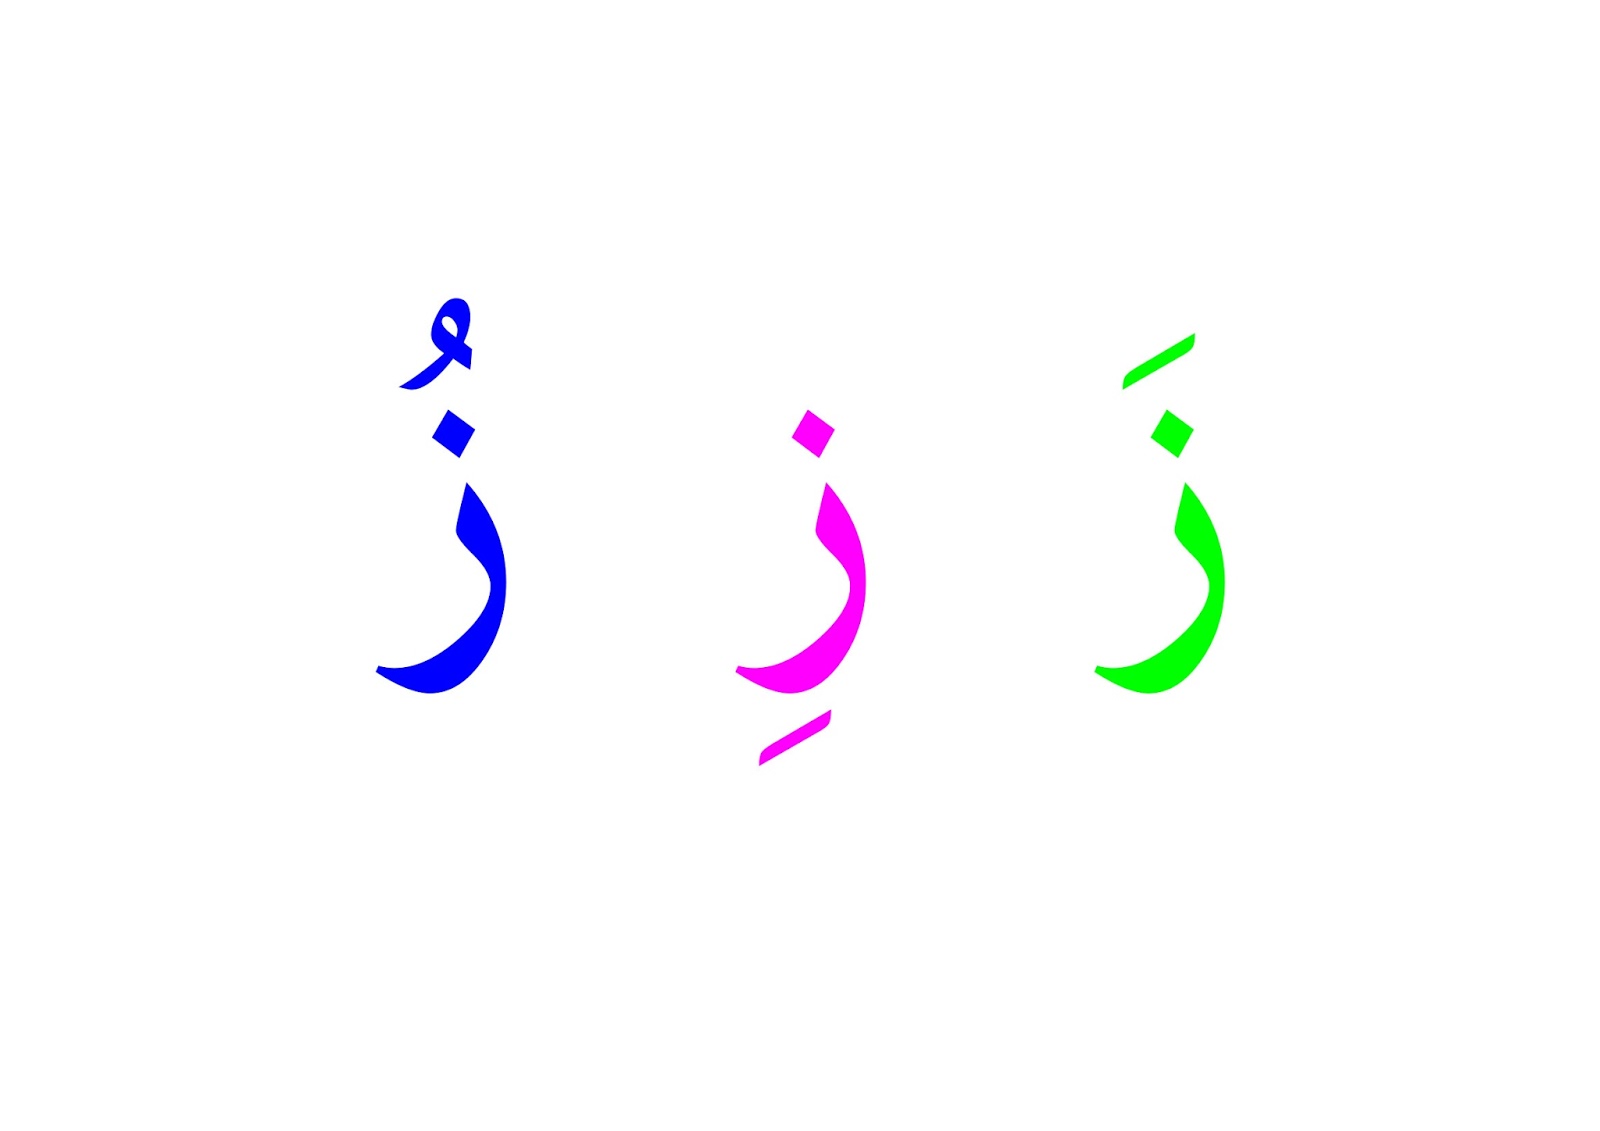 جميع الحروف بالحركات الثلاثة ملونة